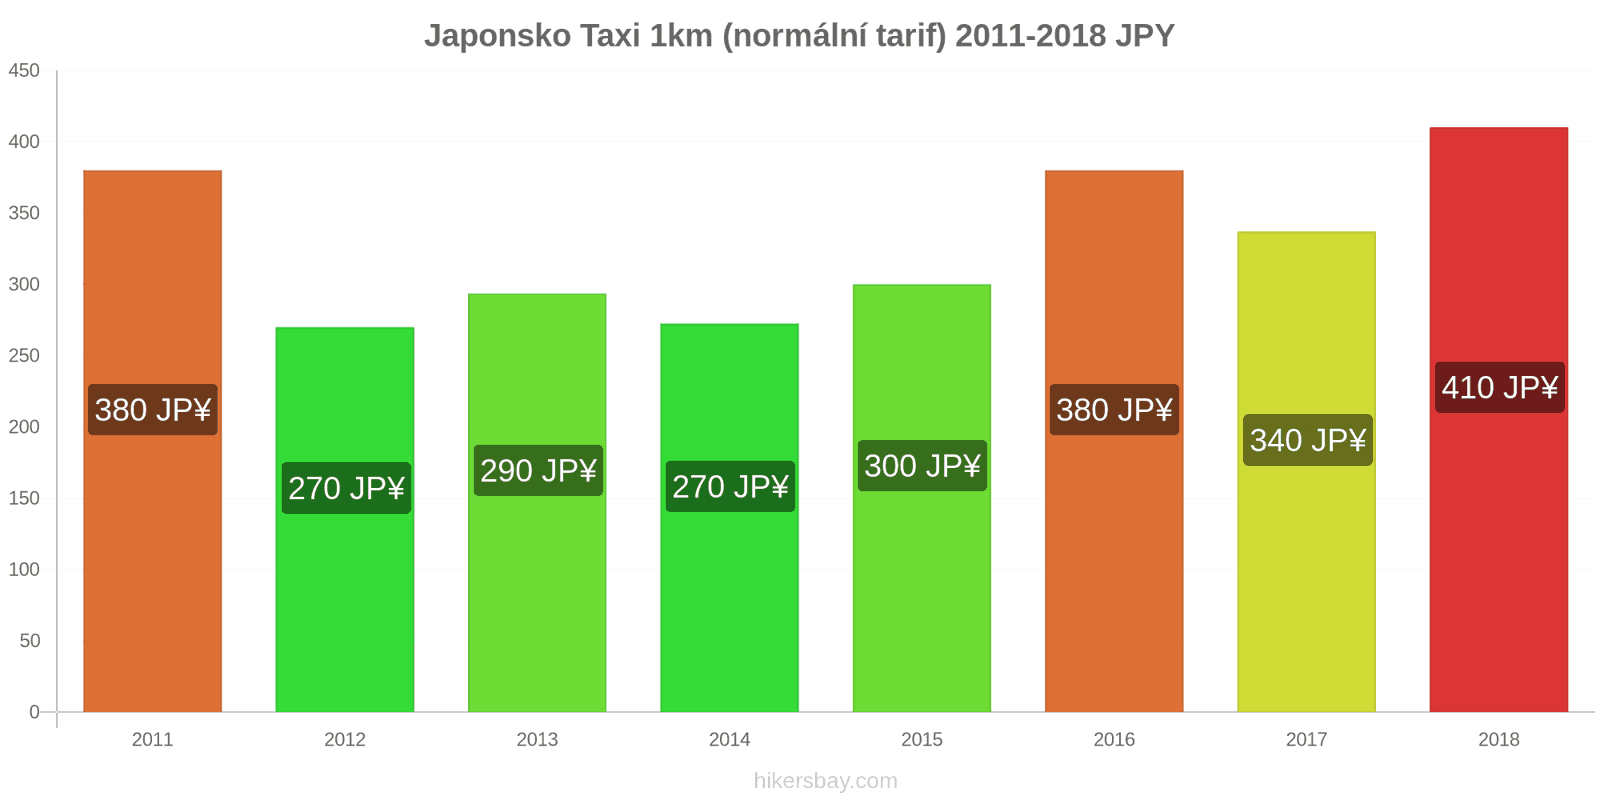 Japonsko změny cen Taxi 1km (normální tarif) hikersbay.com